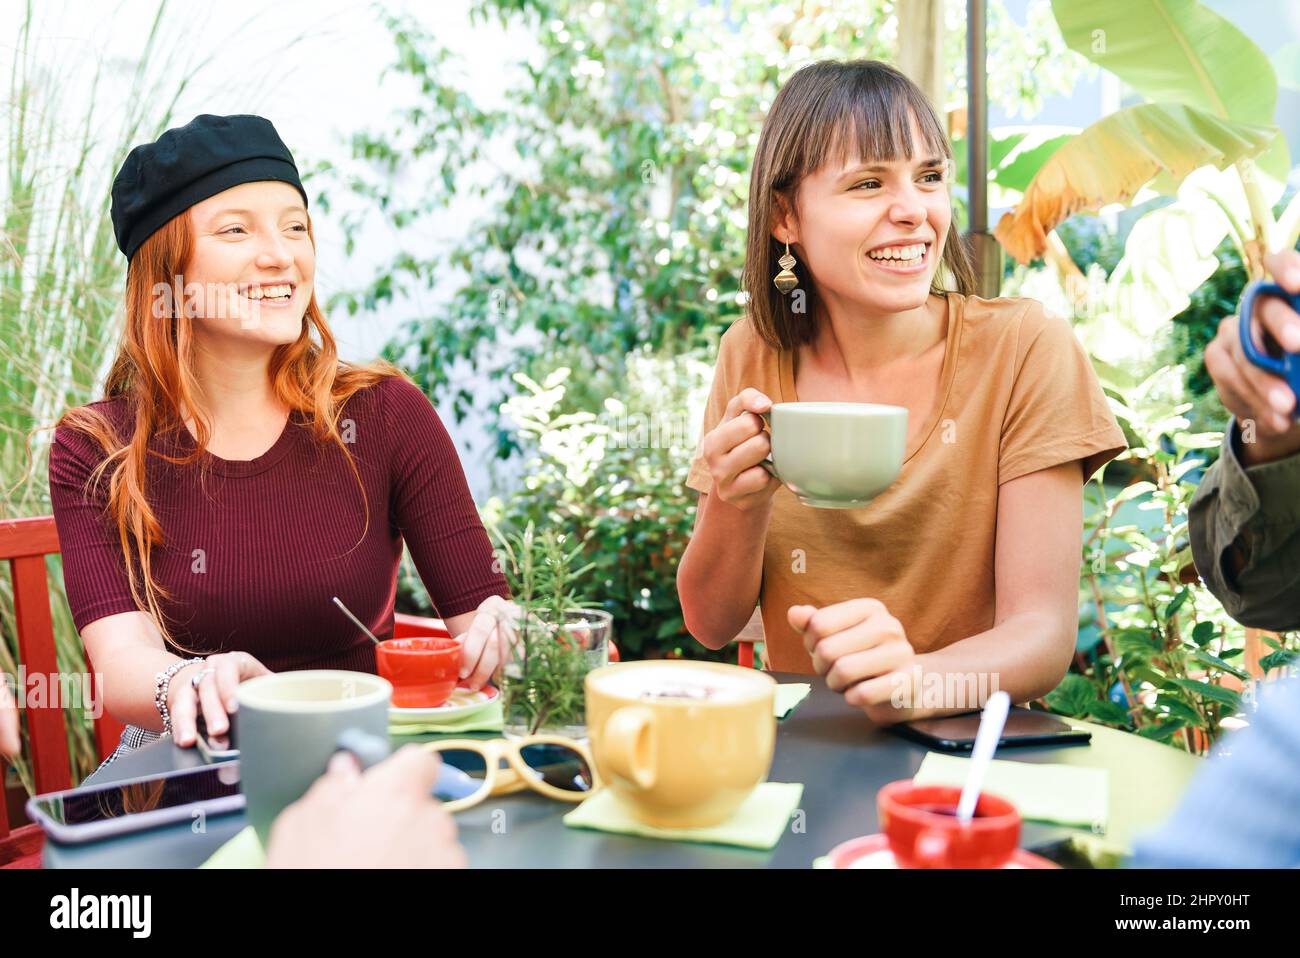 Gruppo di amici felici con tazze di caffè caldo seduti al tavolo in giardino all'aperto con alberi verdi durante la pausa Foto Stock